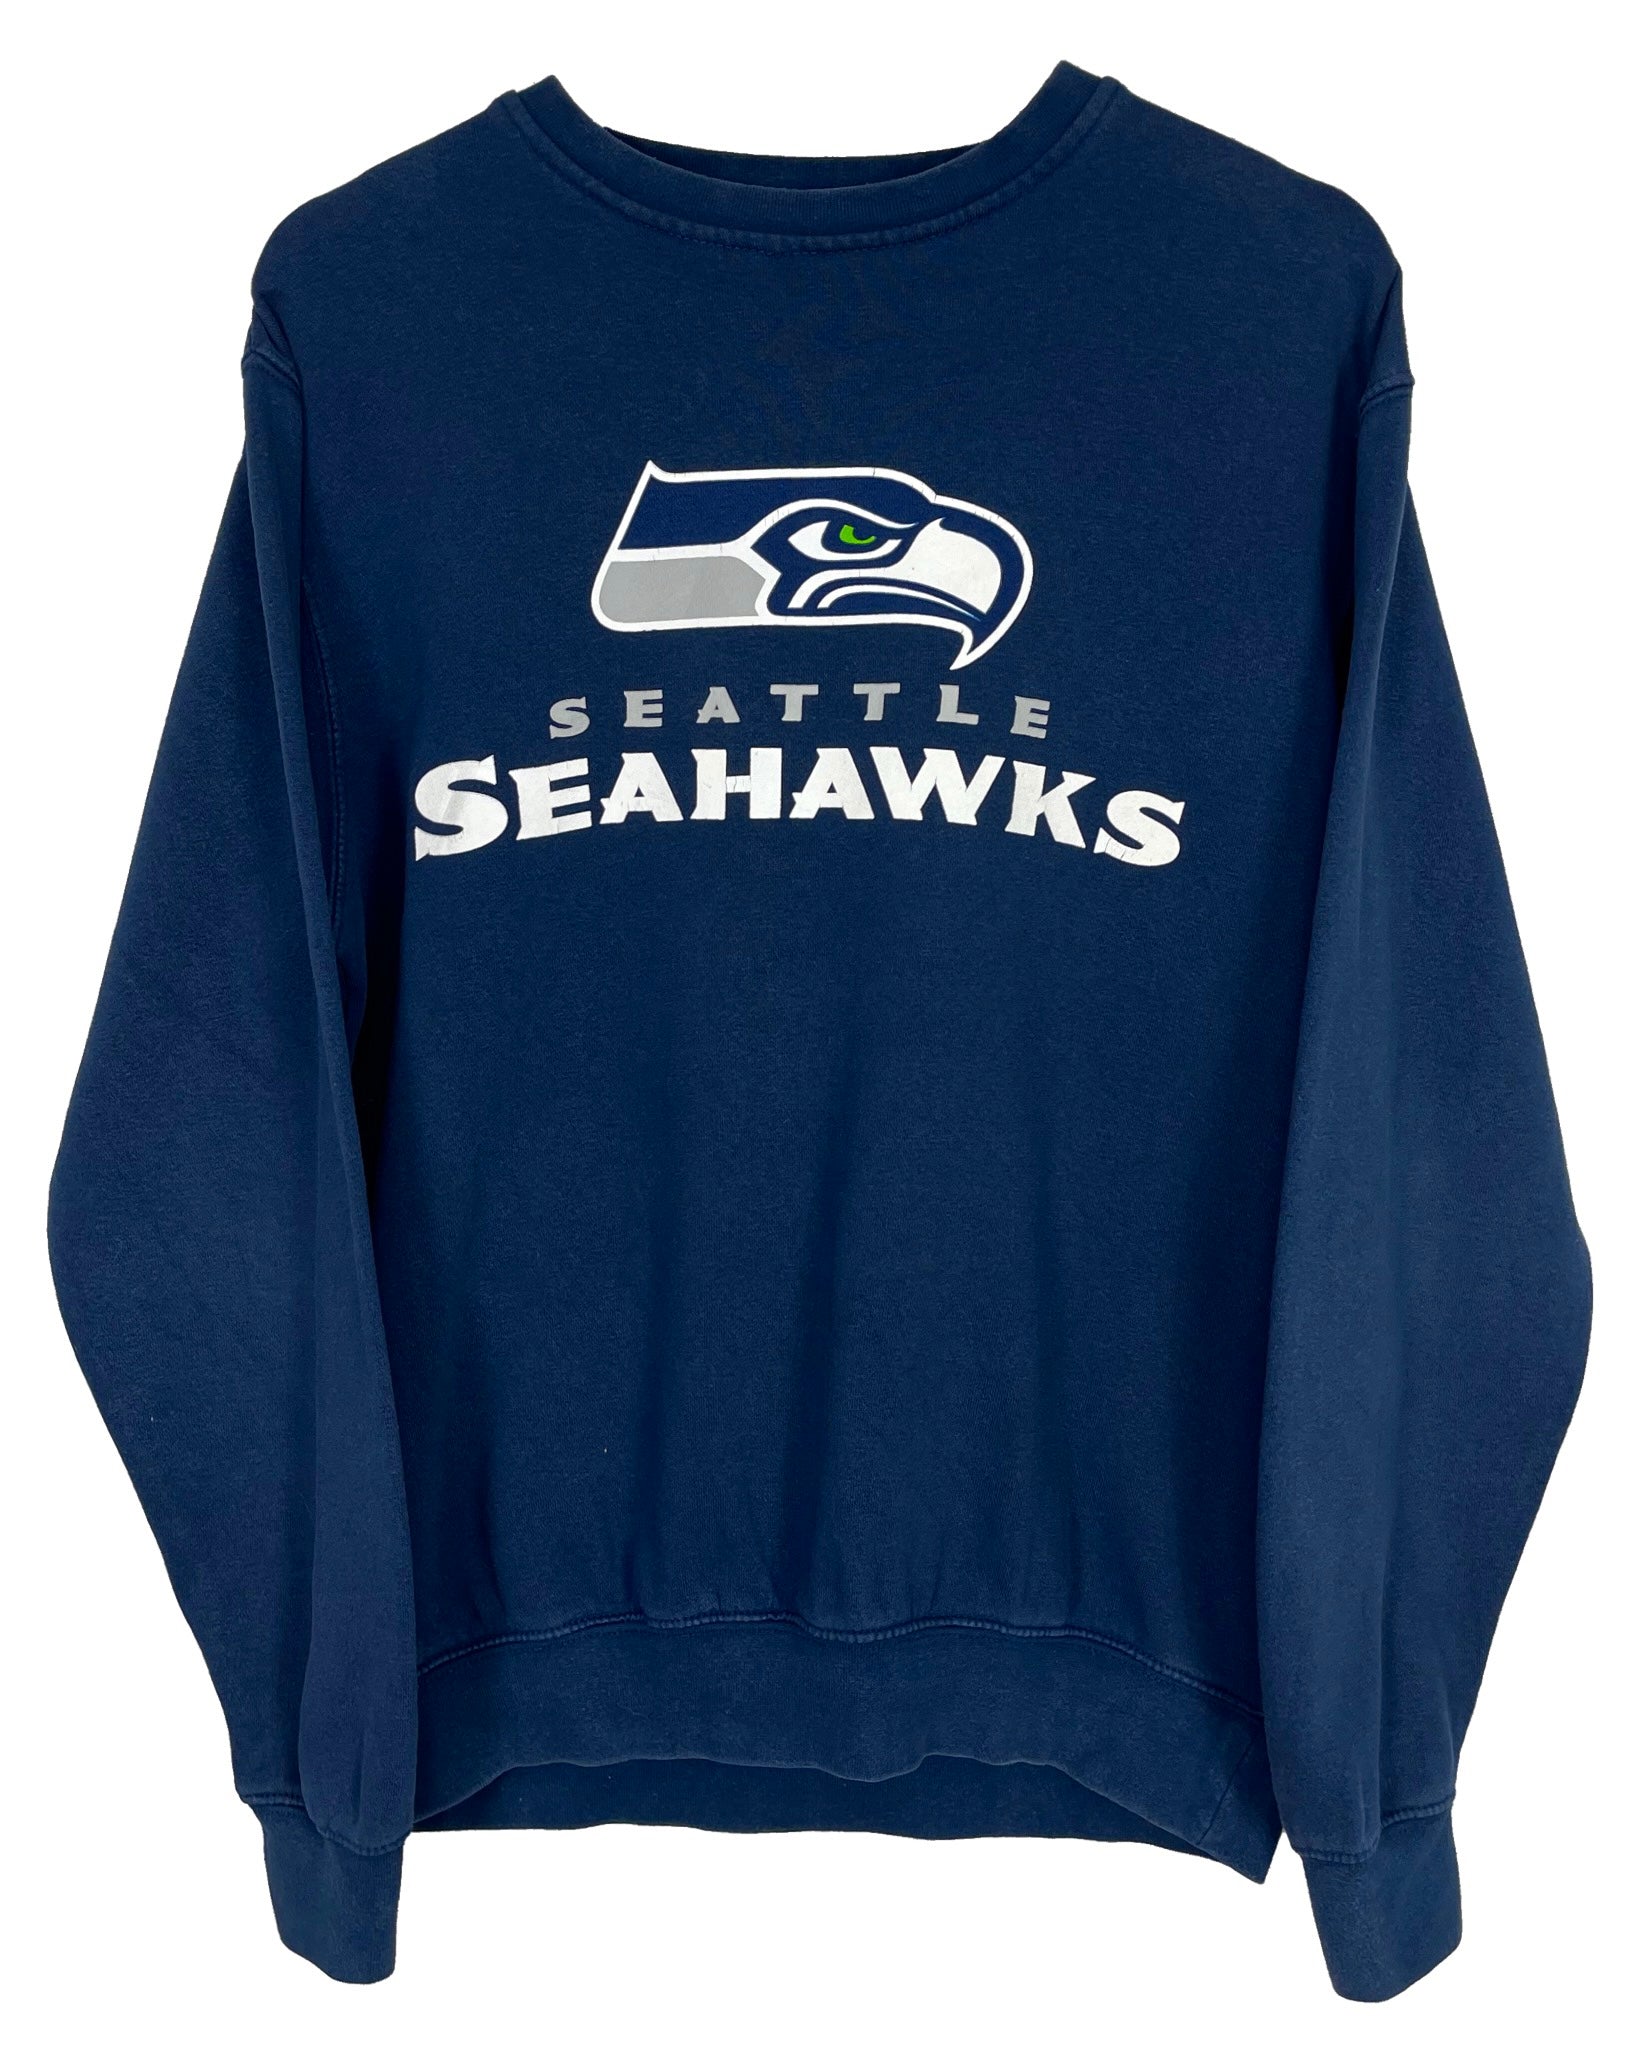  Sweatshirt NFL Sweat - Seattle Seahawks - M - PLOMOSTORE